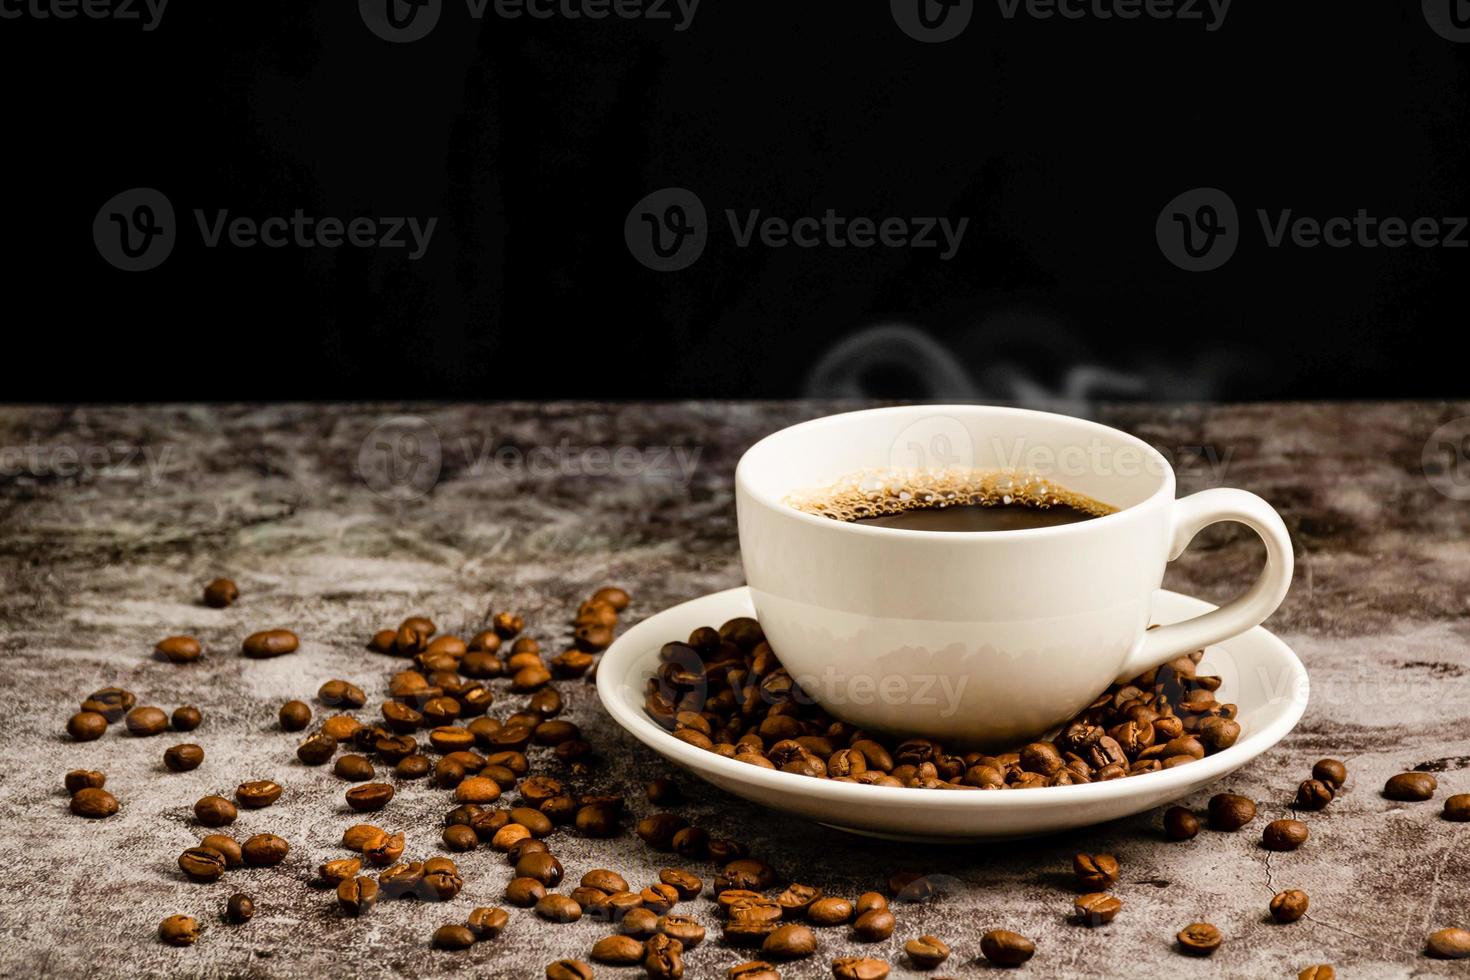 närbild av hett kaffe i en vit kopp placeras på cementgolvsbordet, massor av rostade kaffebönor ligger i kaffekoppsfat, och runt omkring kommer rök och arom från koppen. svart, suddig bakgrund foto